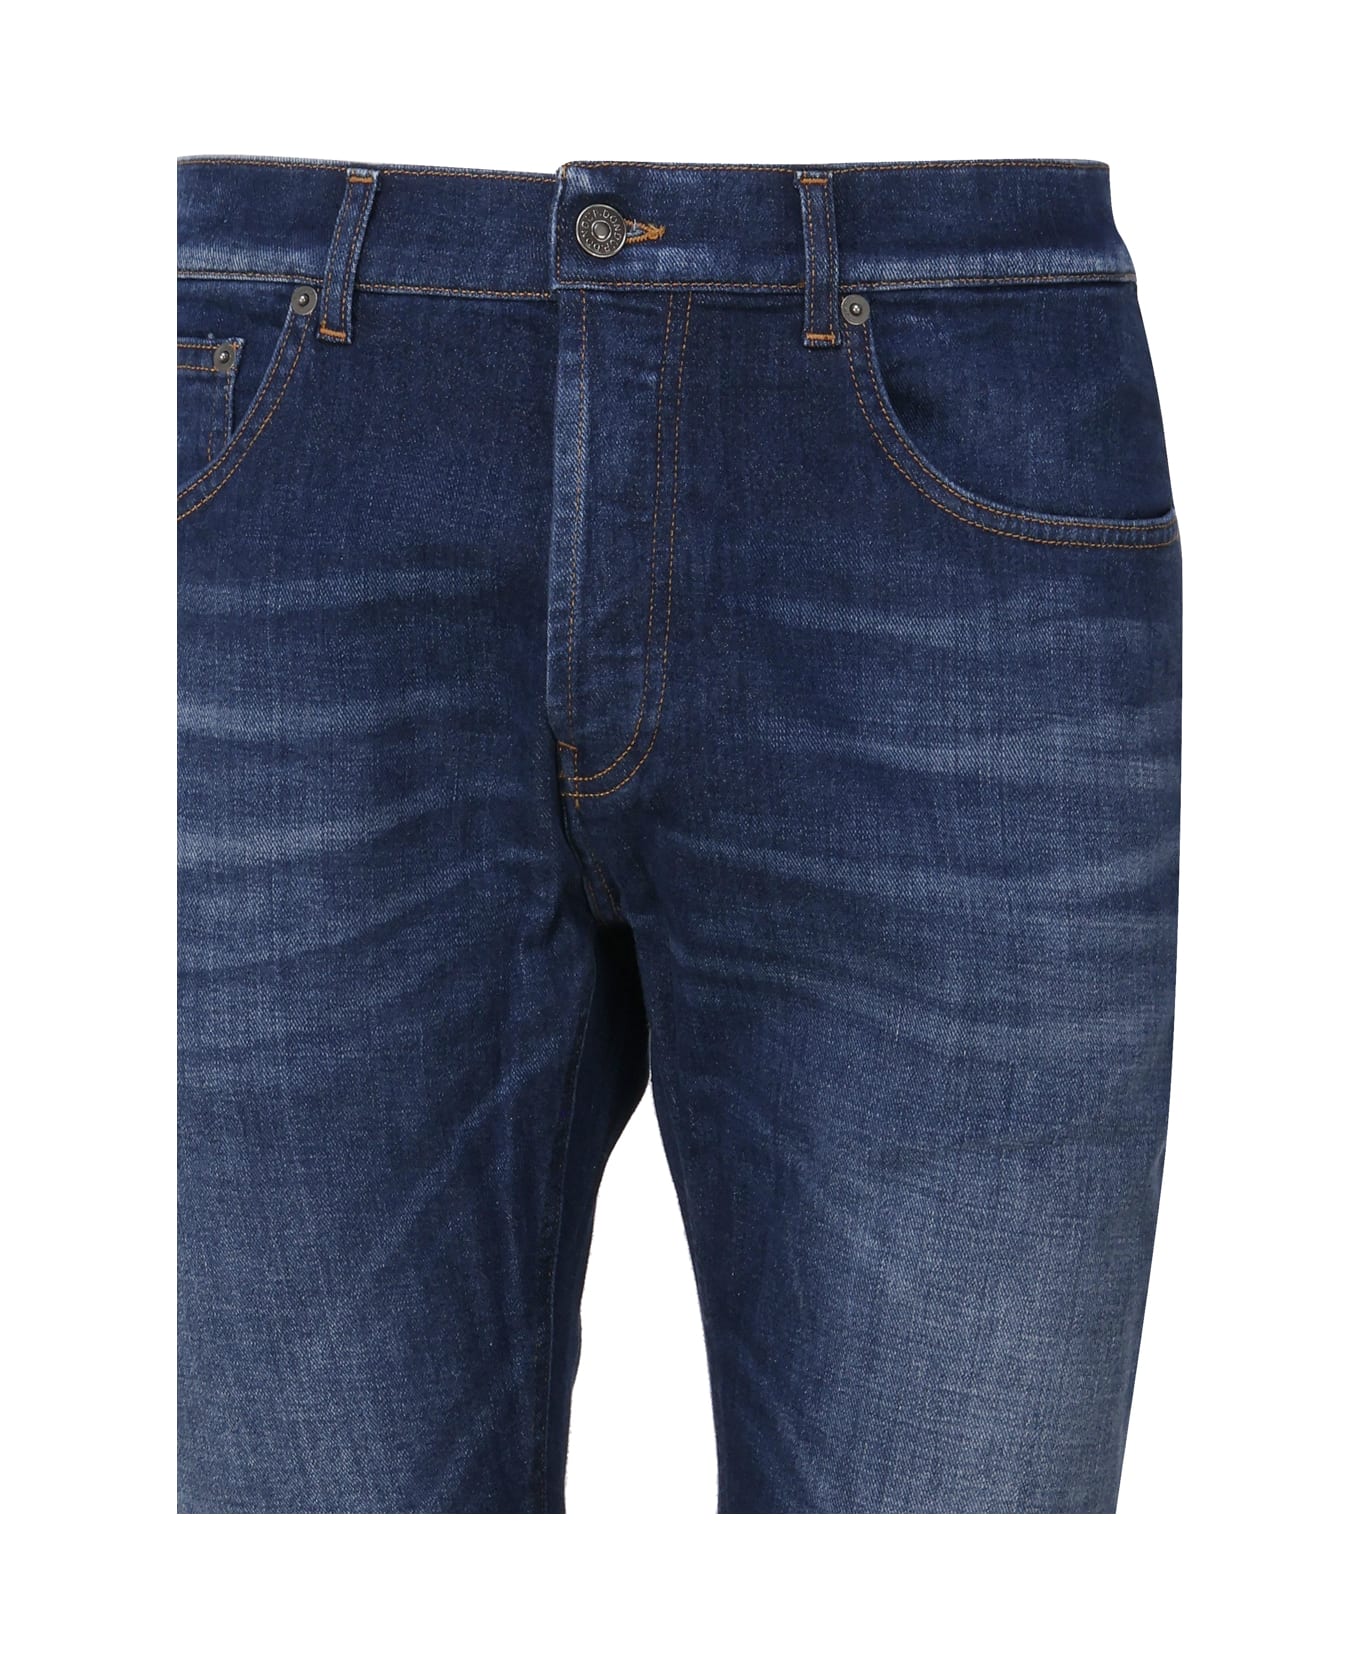 Dondup Cotton Jeans Five Pockets In Cotton Denim - Dark blue